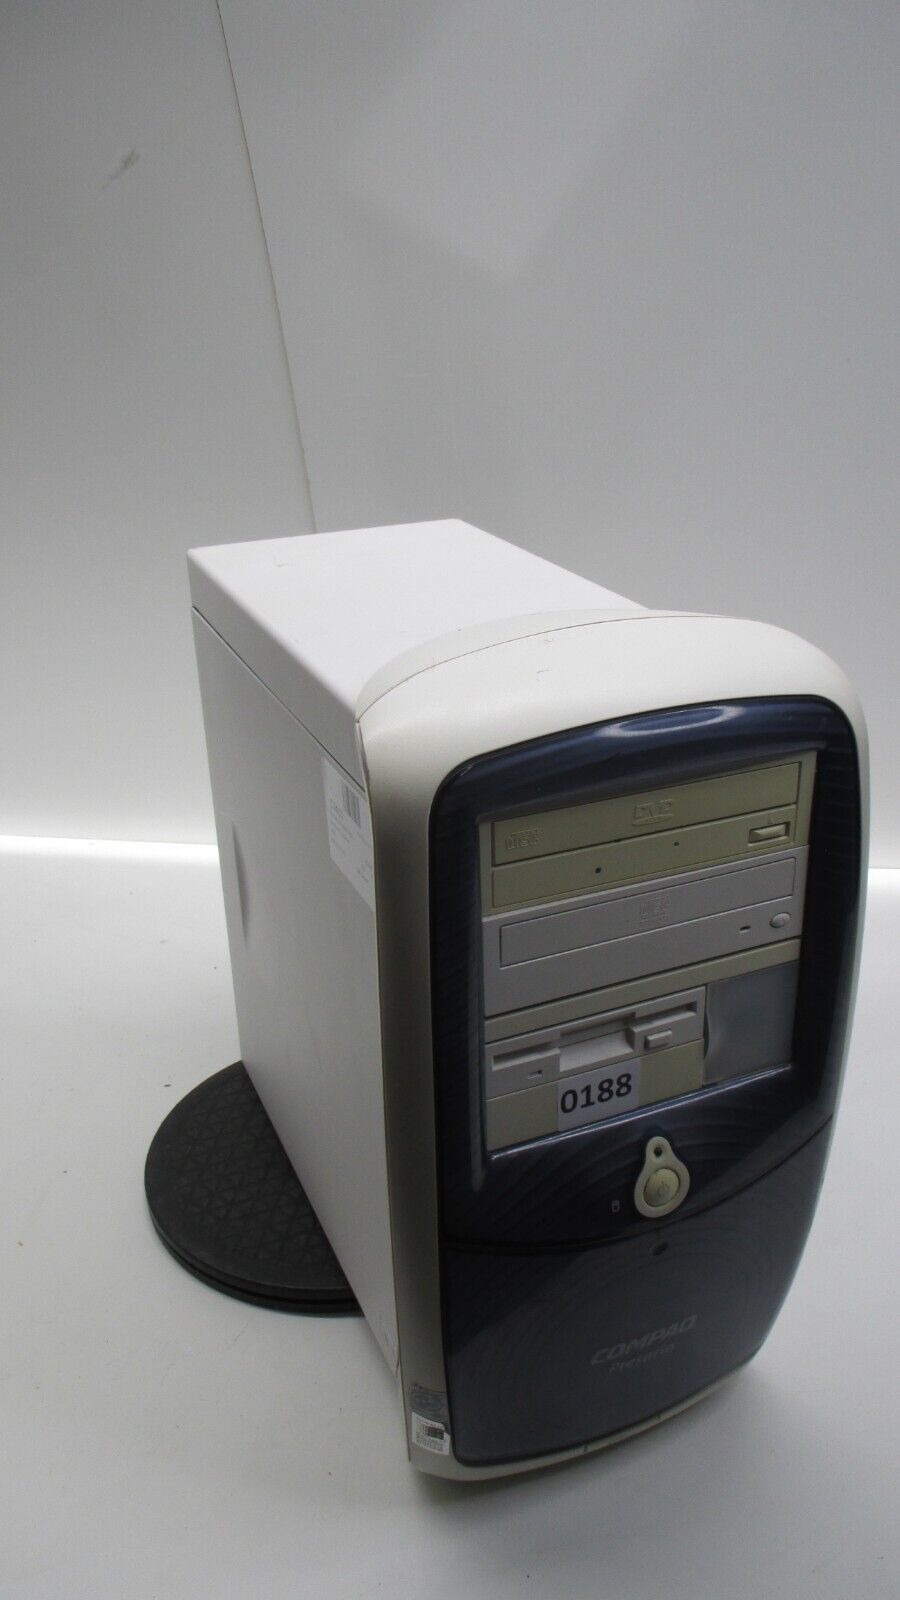 Compaq Presario 5000 5012US Desktop Computer Intel Pentium 3 512MB Ram No HDD